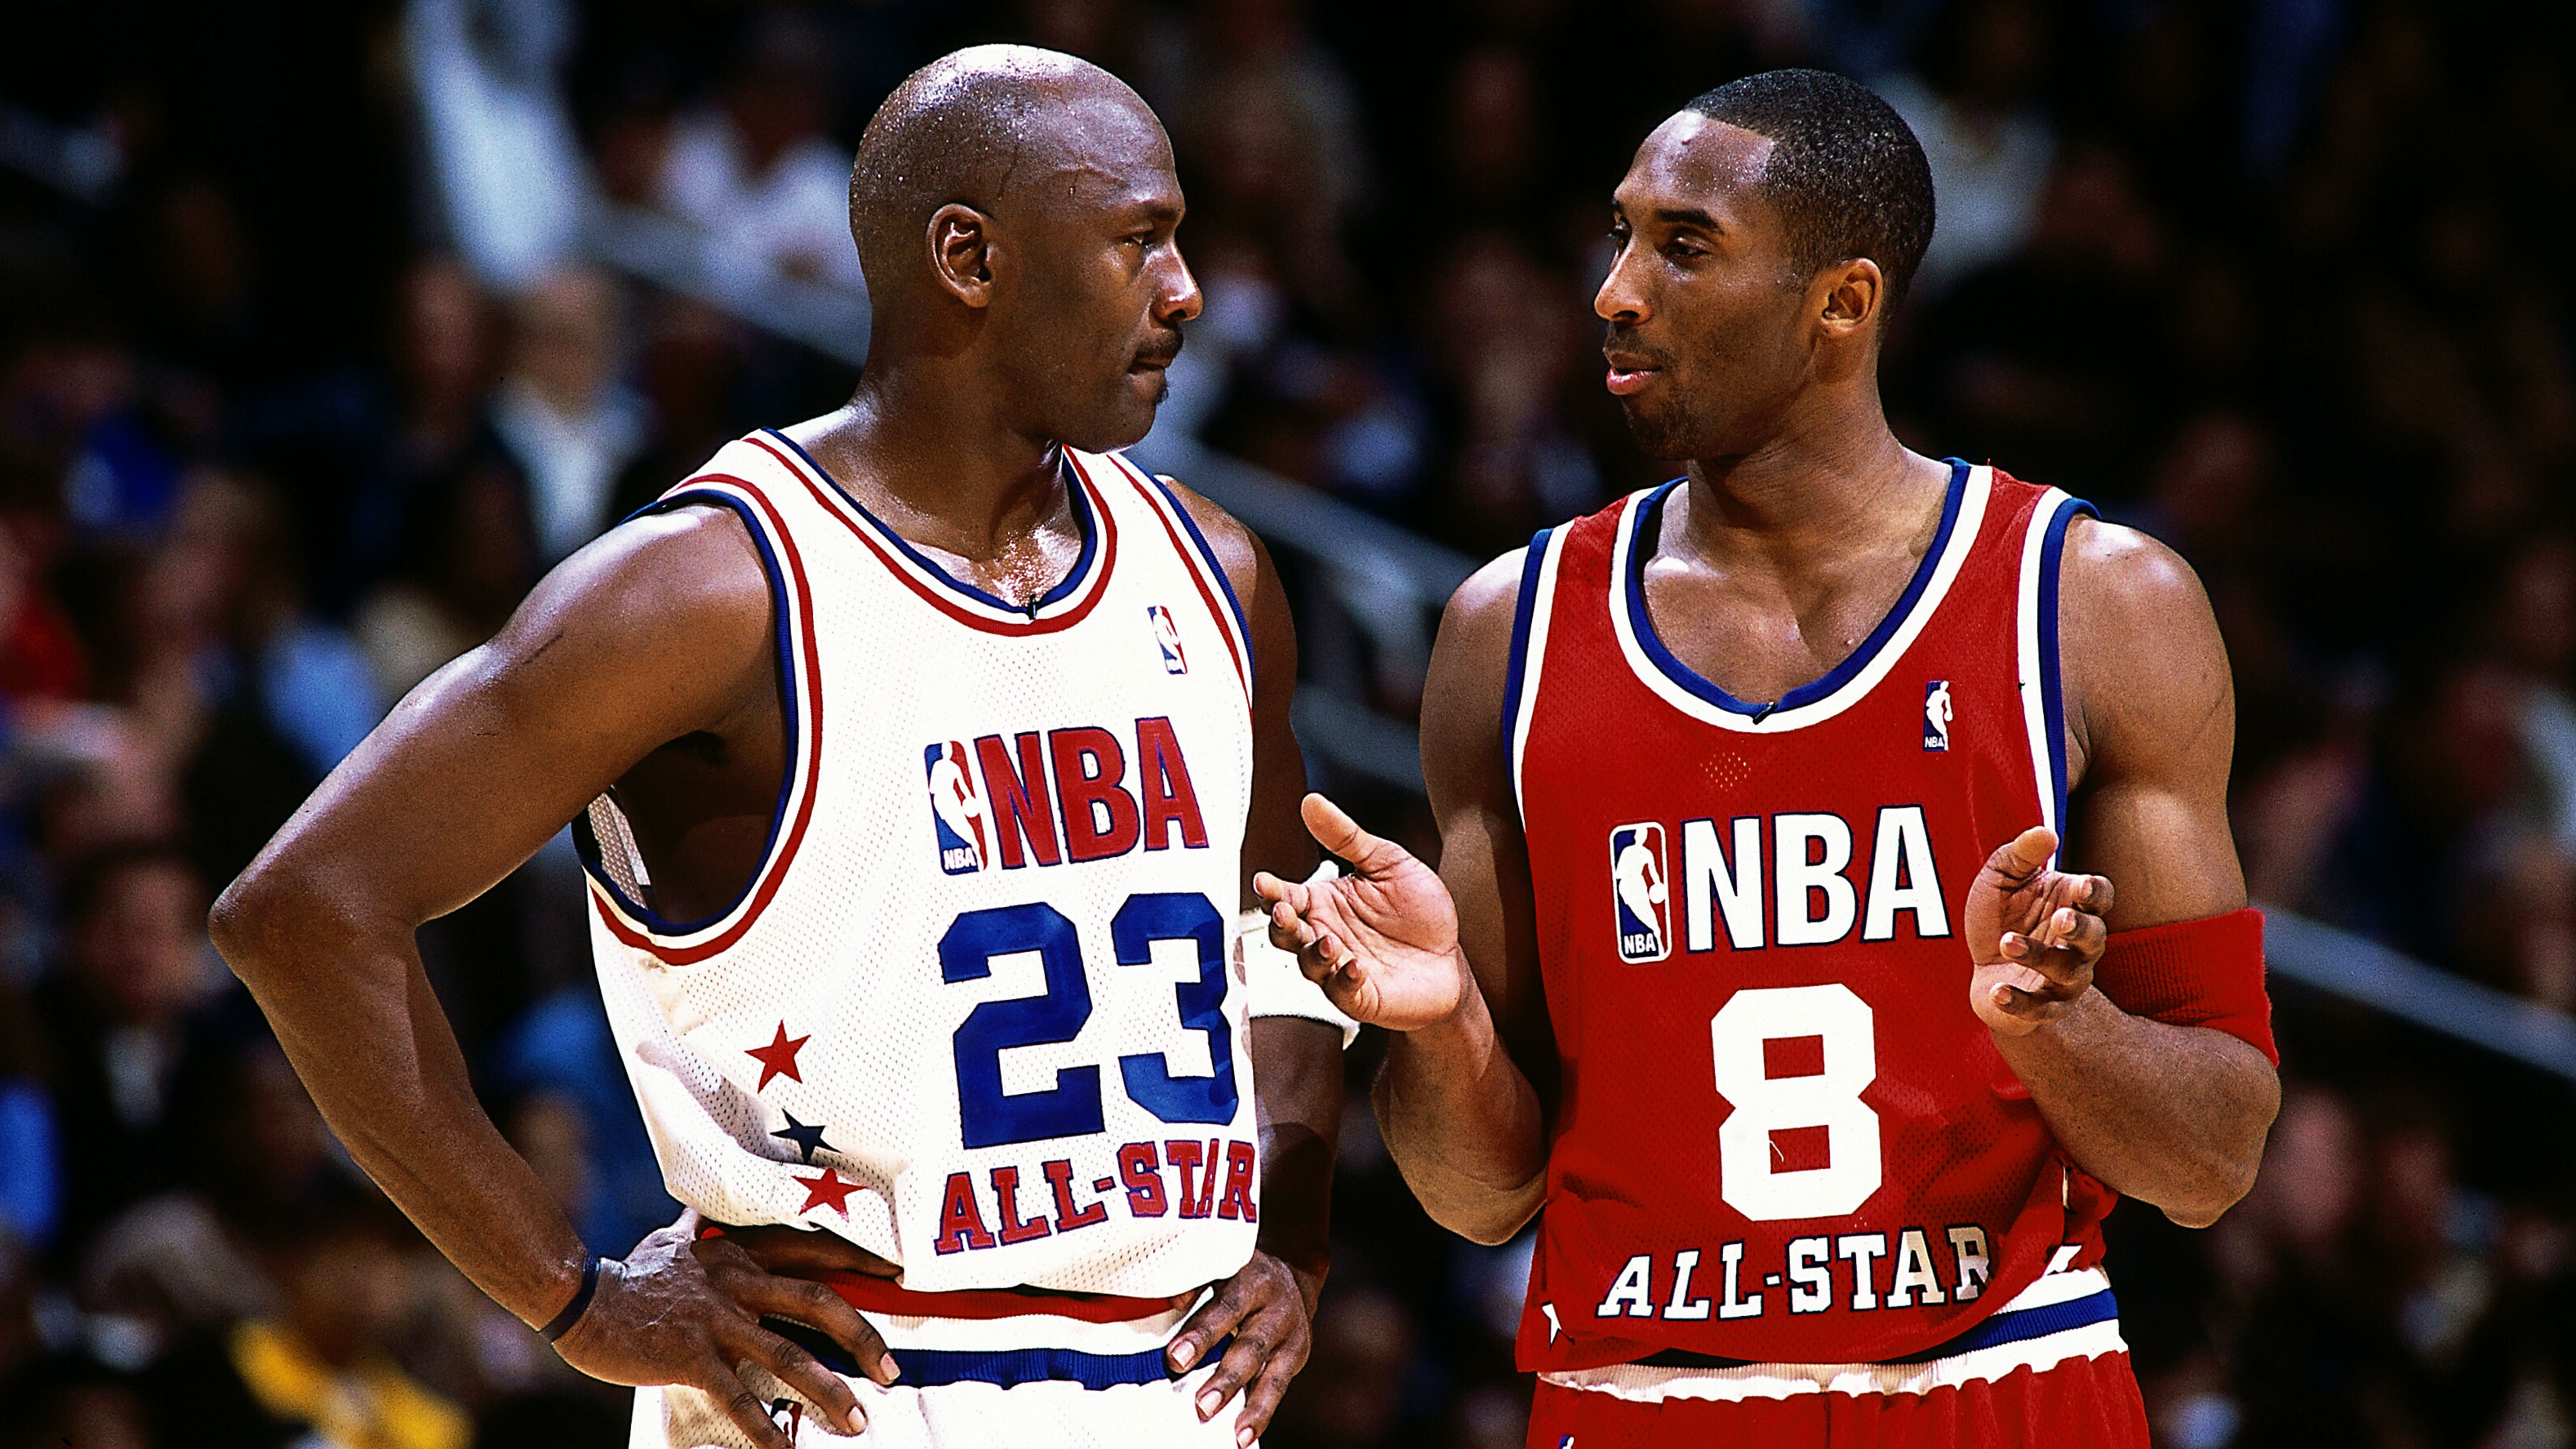 Historia del All Star Game de la NBA.